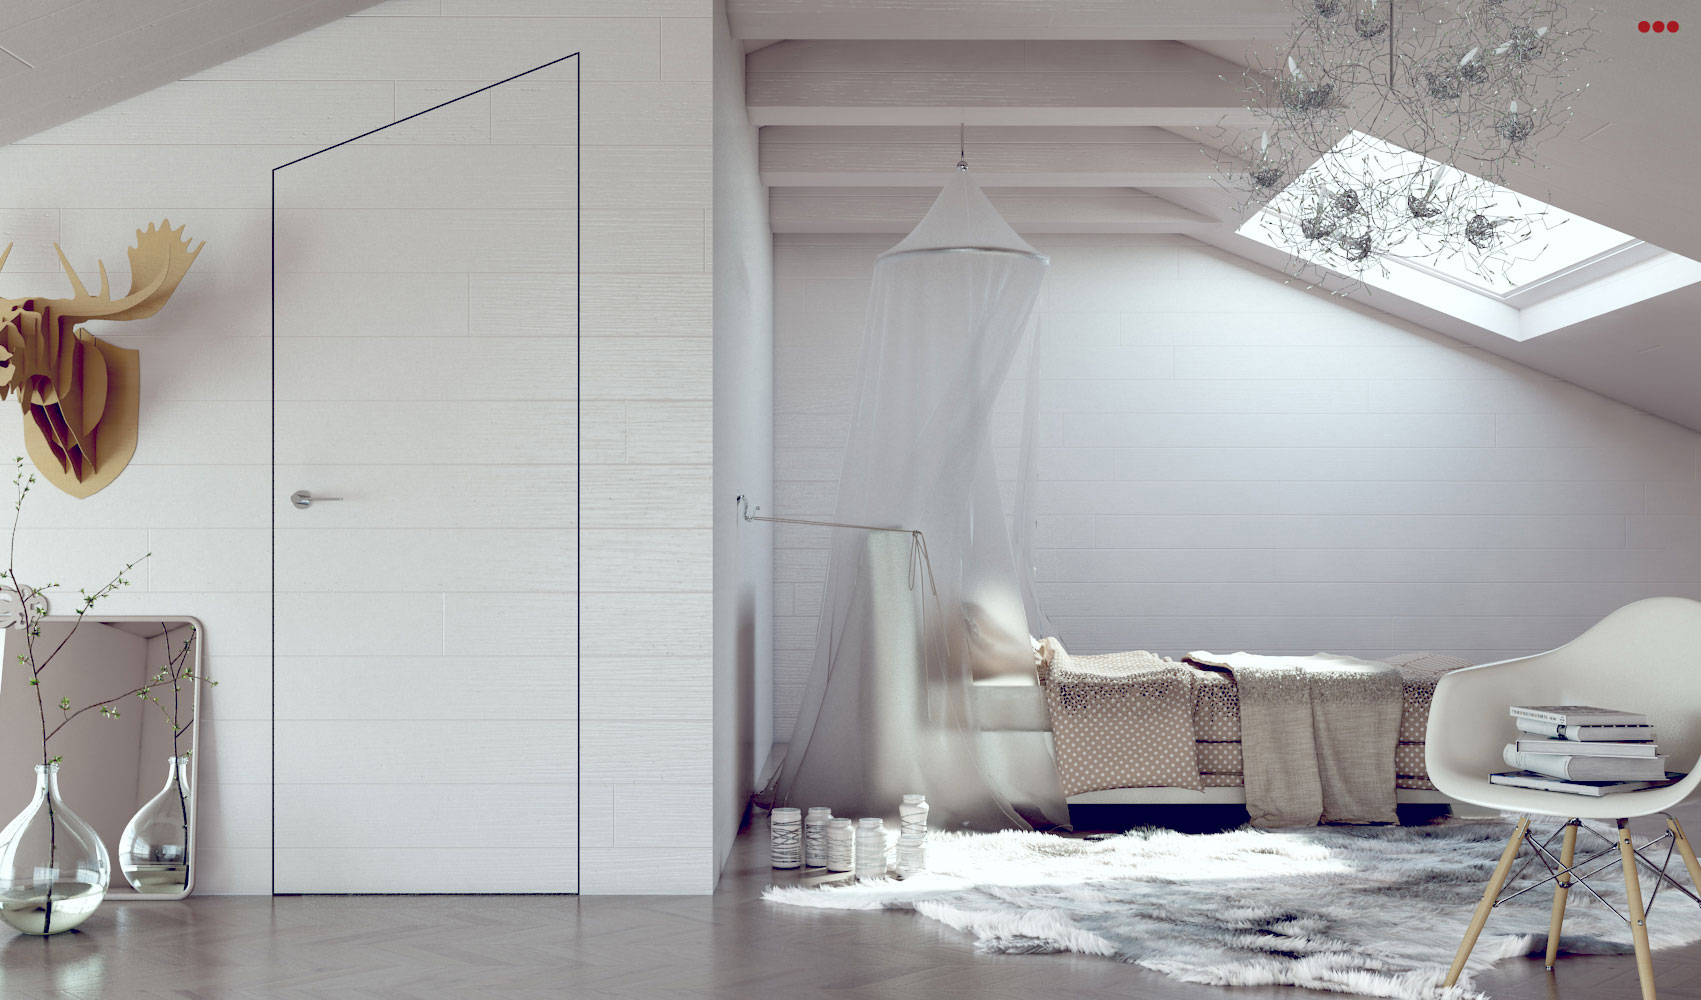 Studio Bartolini progettazione rendering 3D camera mito interior design tonalita chiare